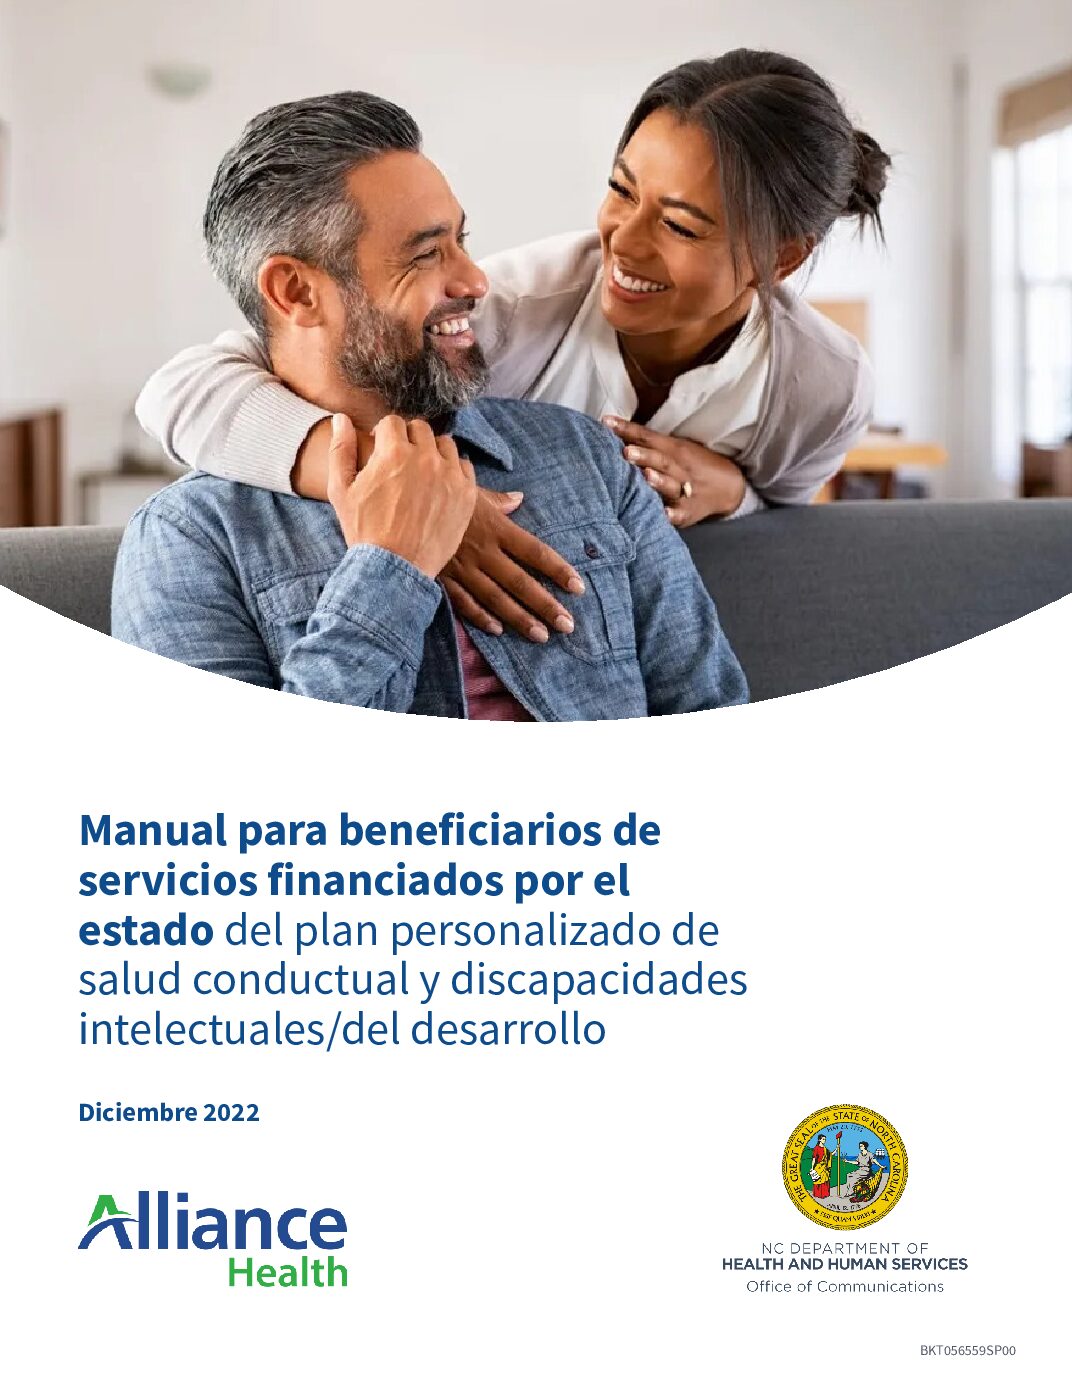 Manual para beneficiarios de servicios financiados por el estado del plan personalizado de salud conductual y discapacidades intelectuales/del desarrollo